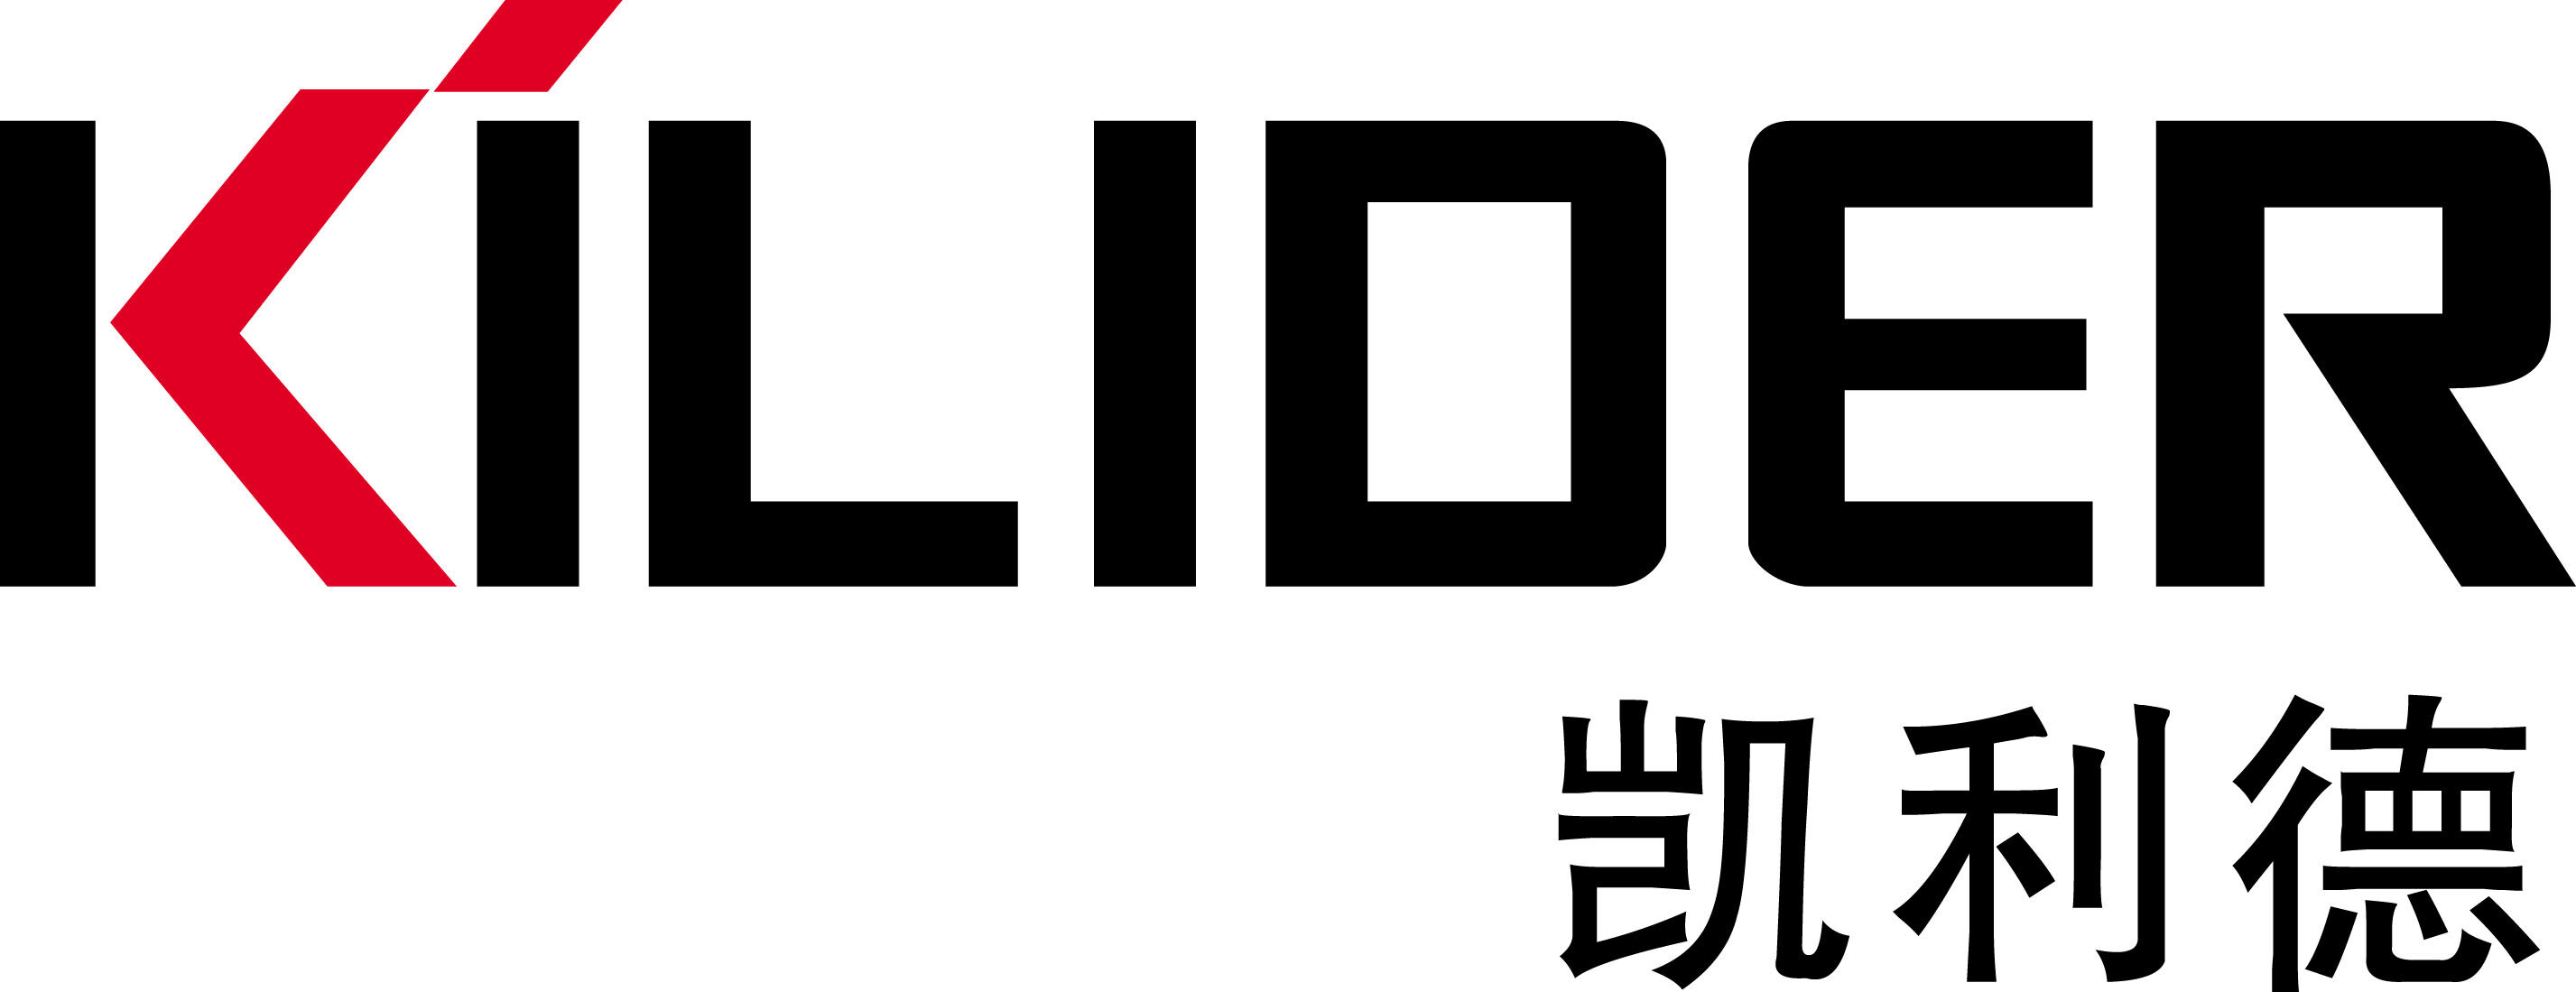 东莞市恒轩办公用品有限公司logo